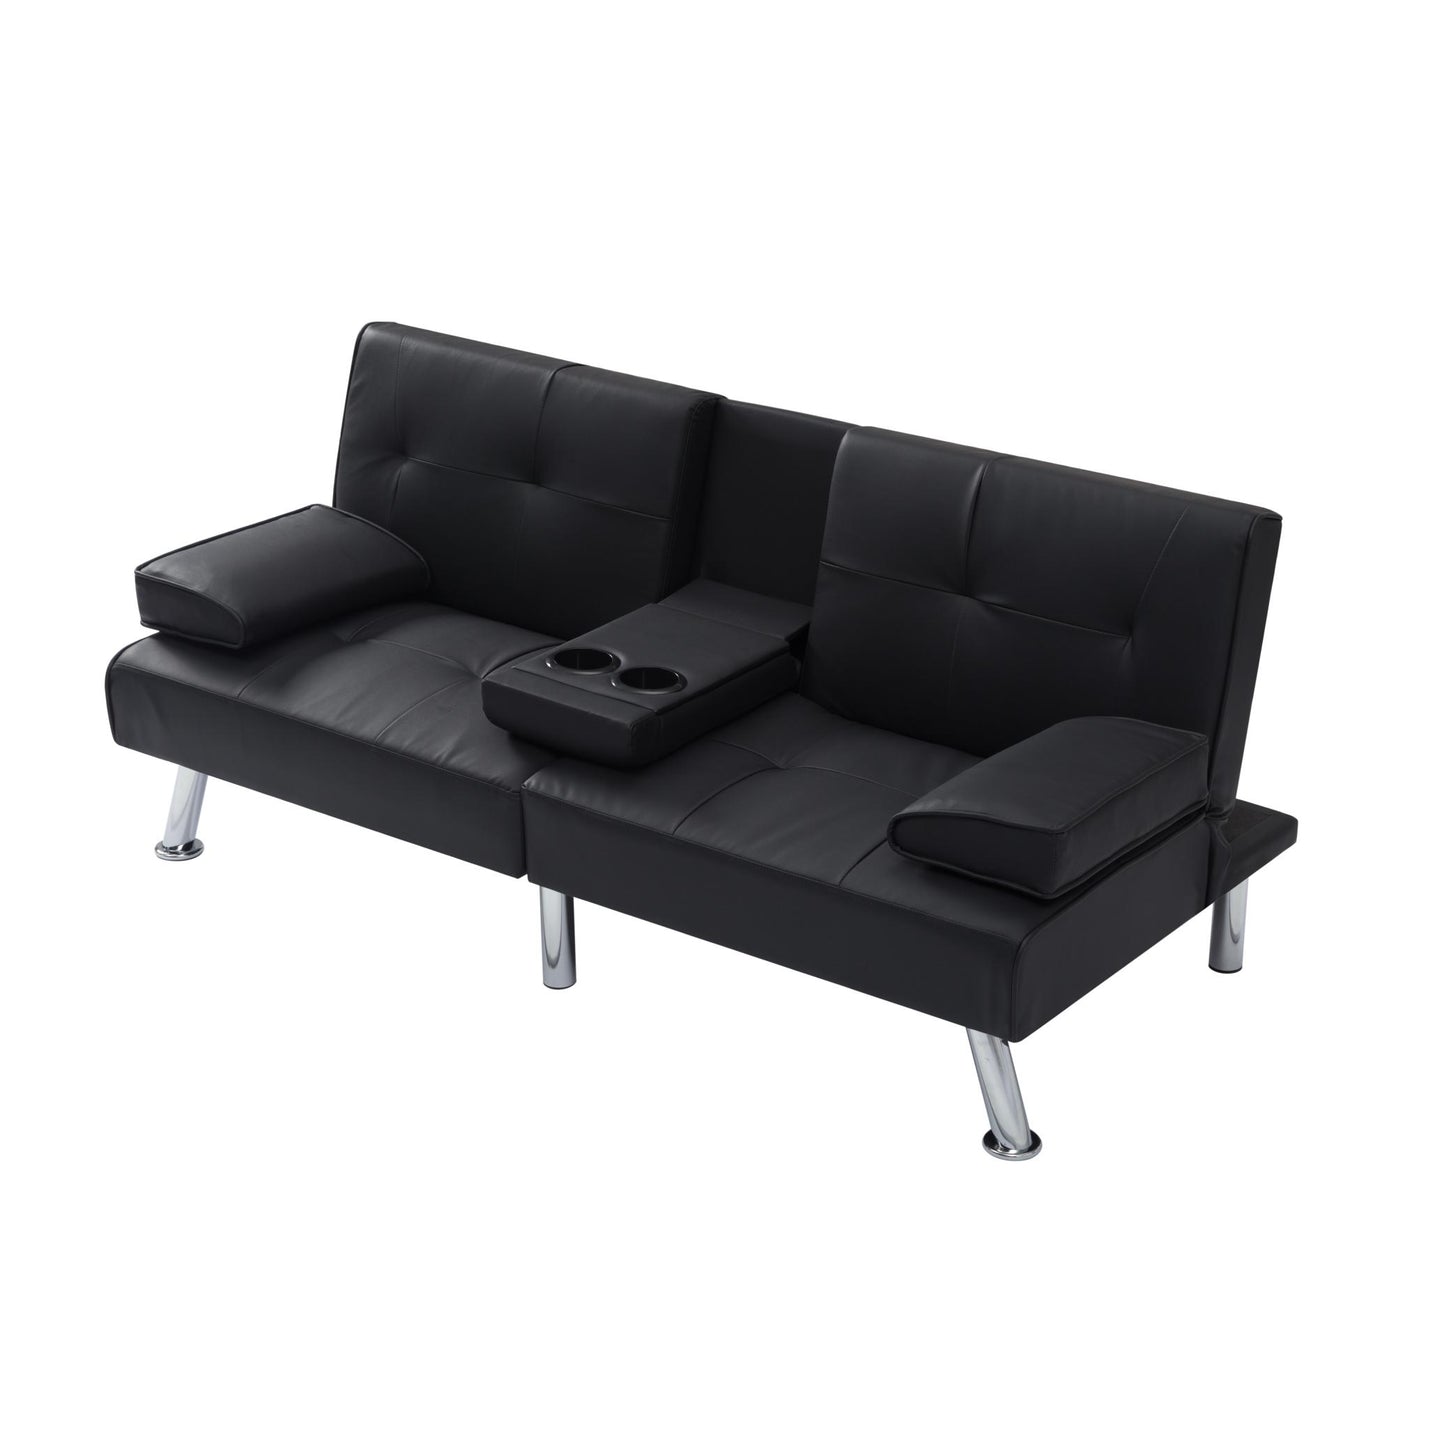 66.9” Futon sleeper sofa bed